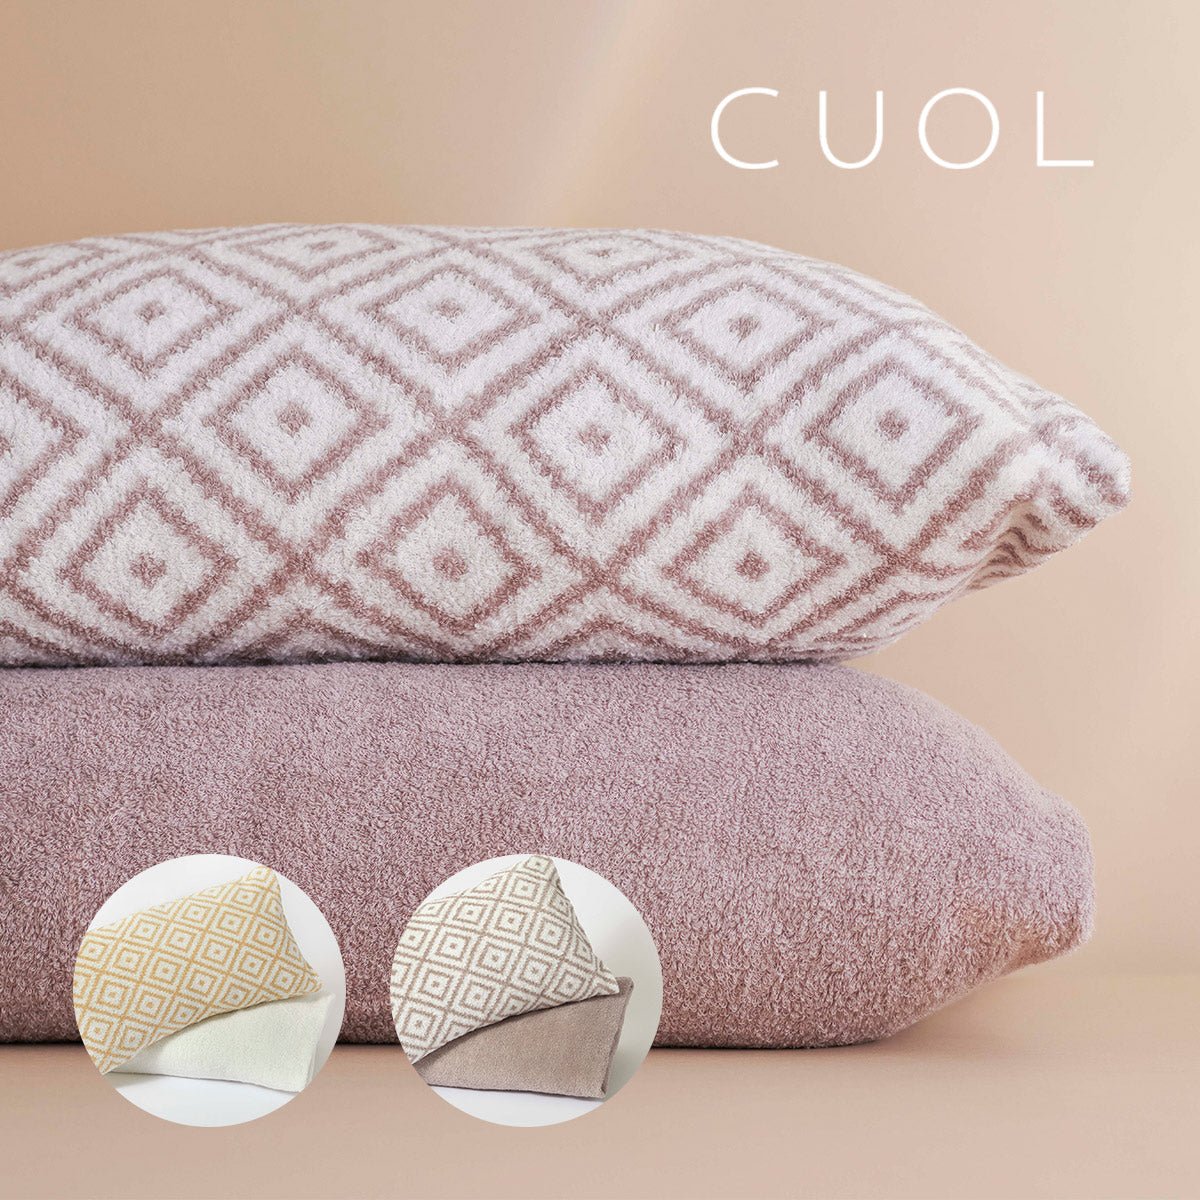 CUOL スキンケアできる枕カバー 2カラー | ママイクコ 公式通販